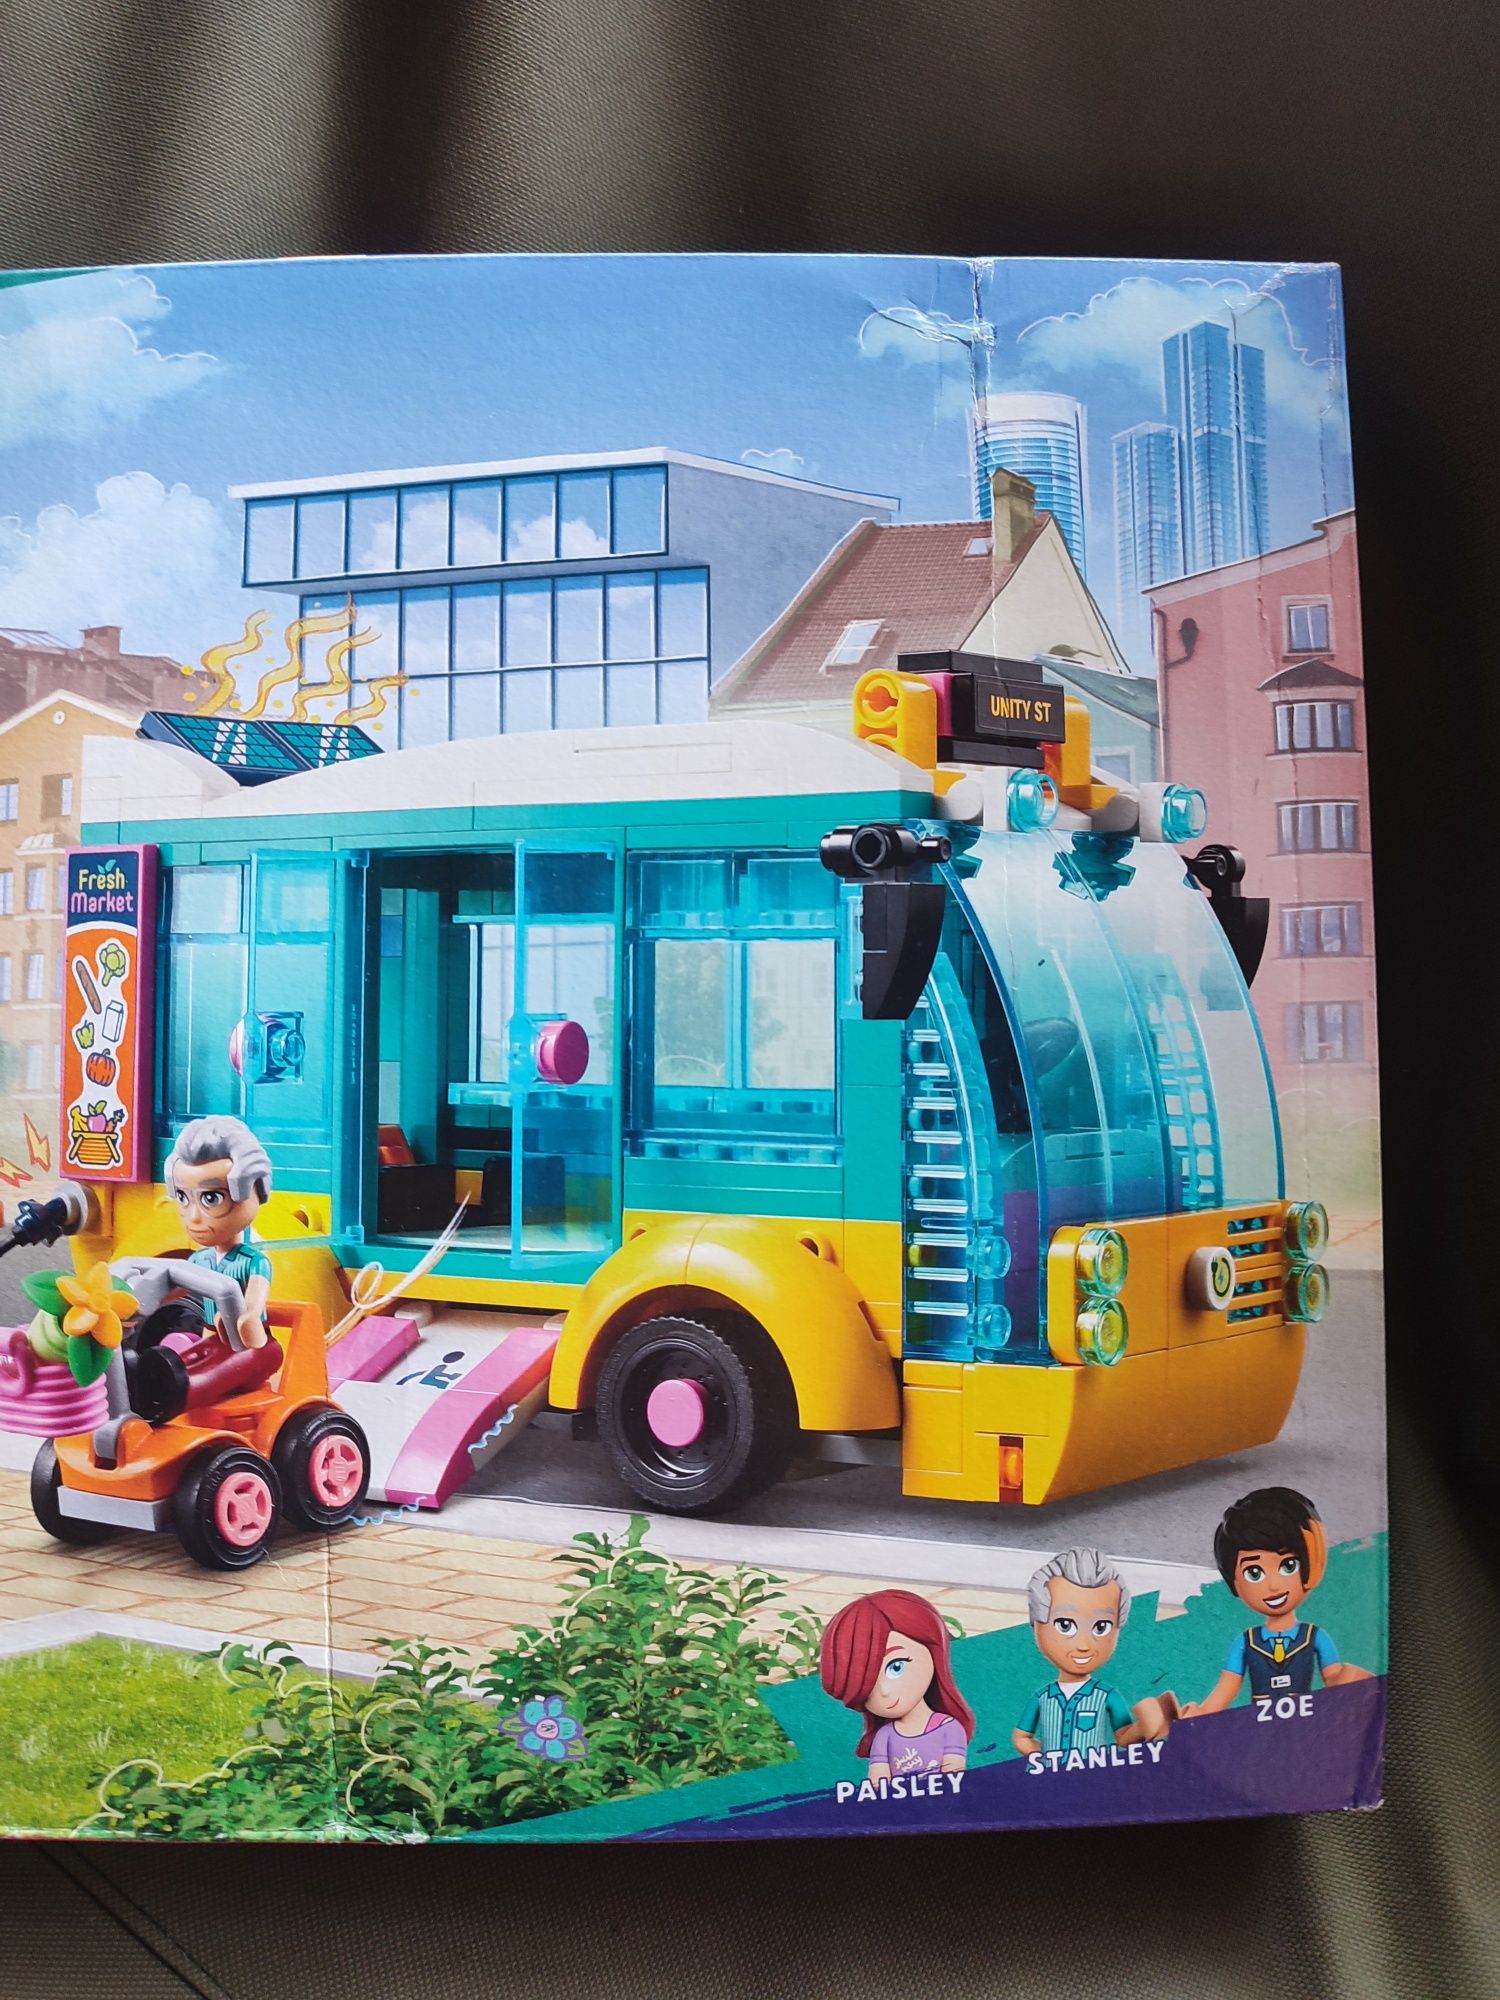 LEGO® Friends - Autobuz din orasul Heartlake 41759, 480 piese